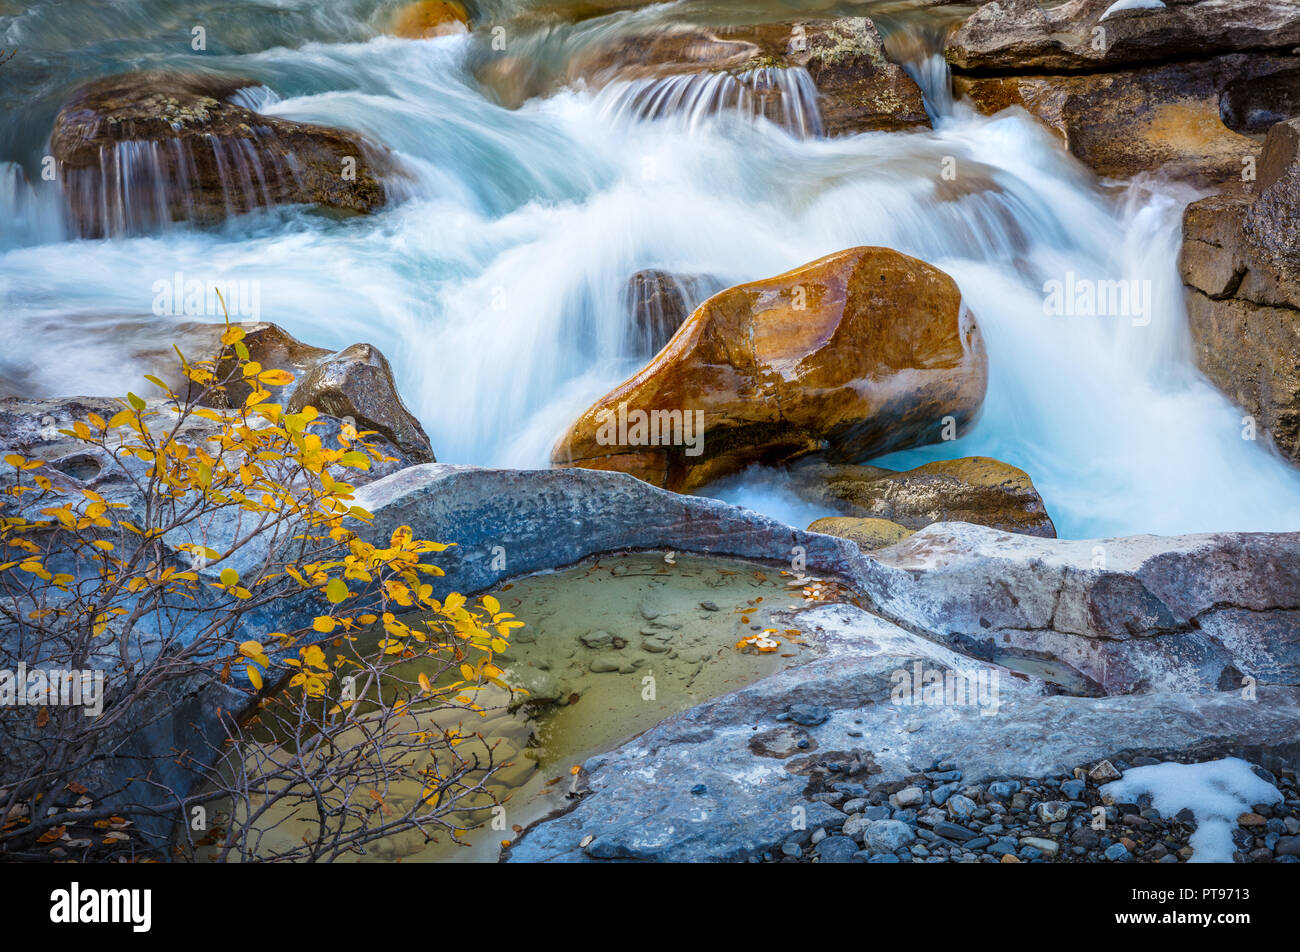 Nigel Short Creek es un arroyo situado en las Montañas Rocosas canadienses de Alberta, Canadá. Foto de stock